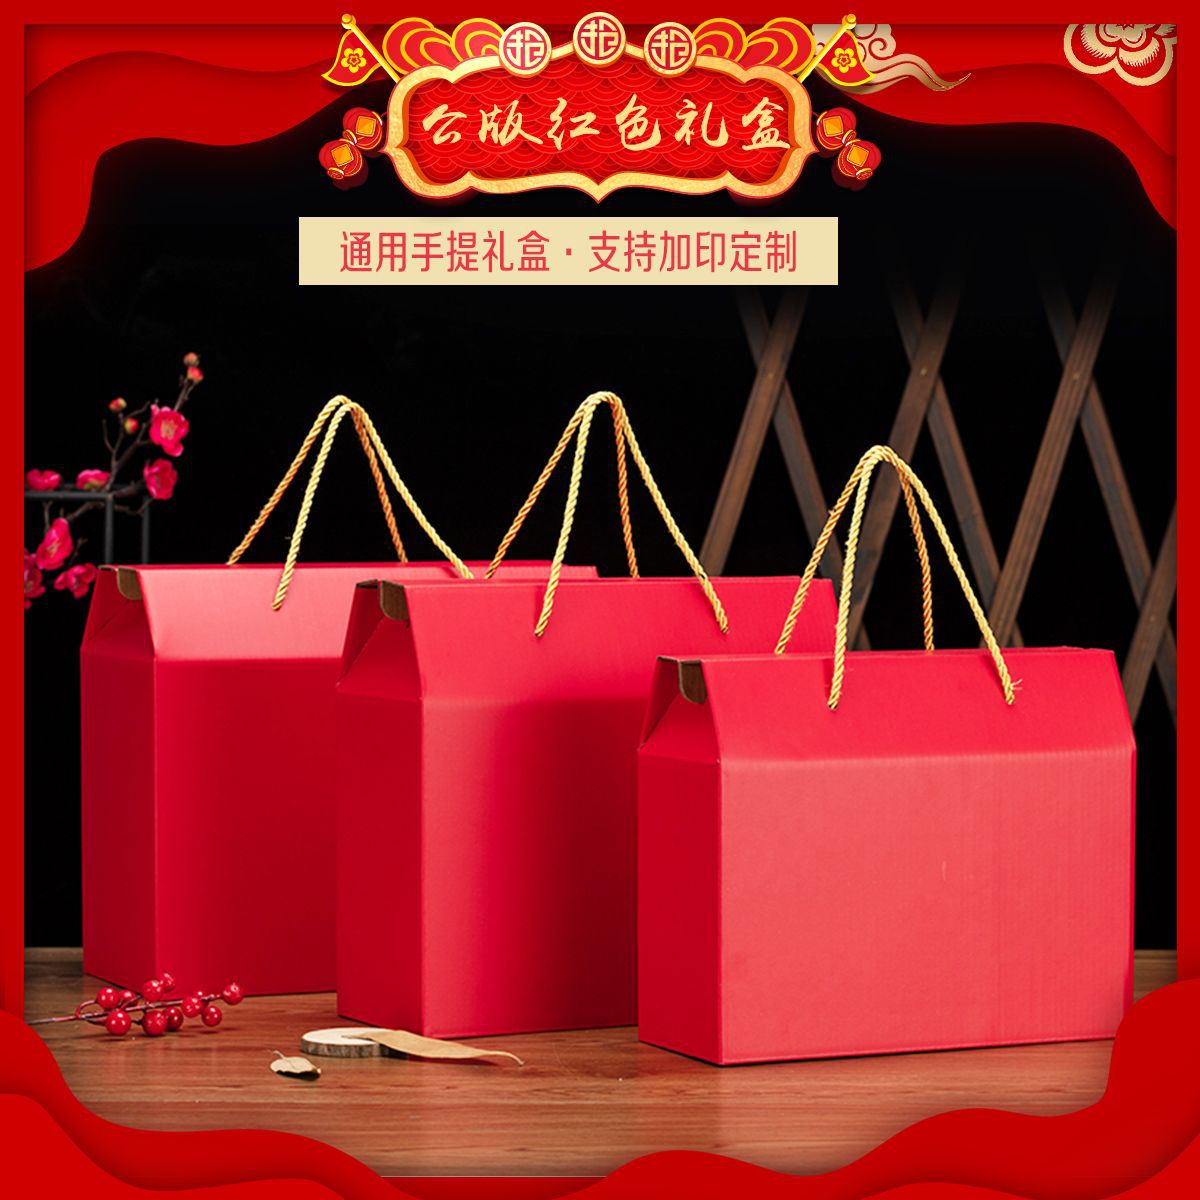 厂家批发 红色通用手提包装盒牛肉熟食蒸碗送礼 过年春节礼盒定制